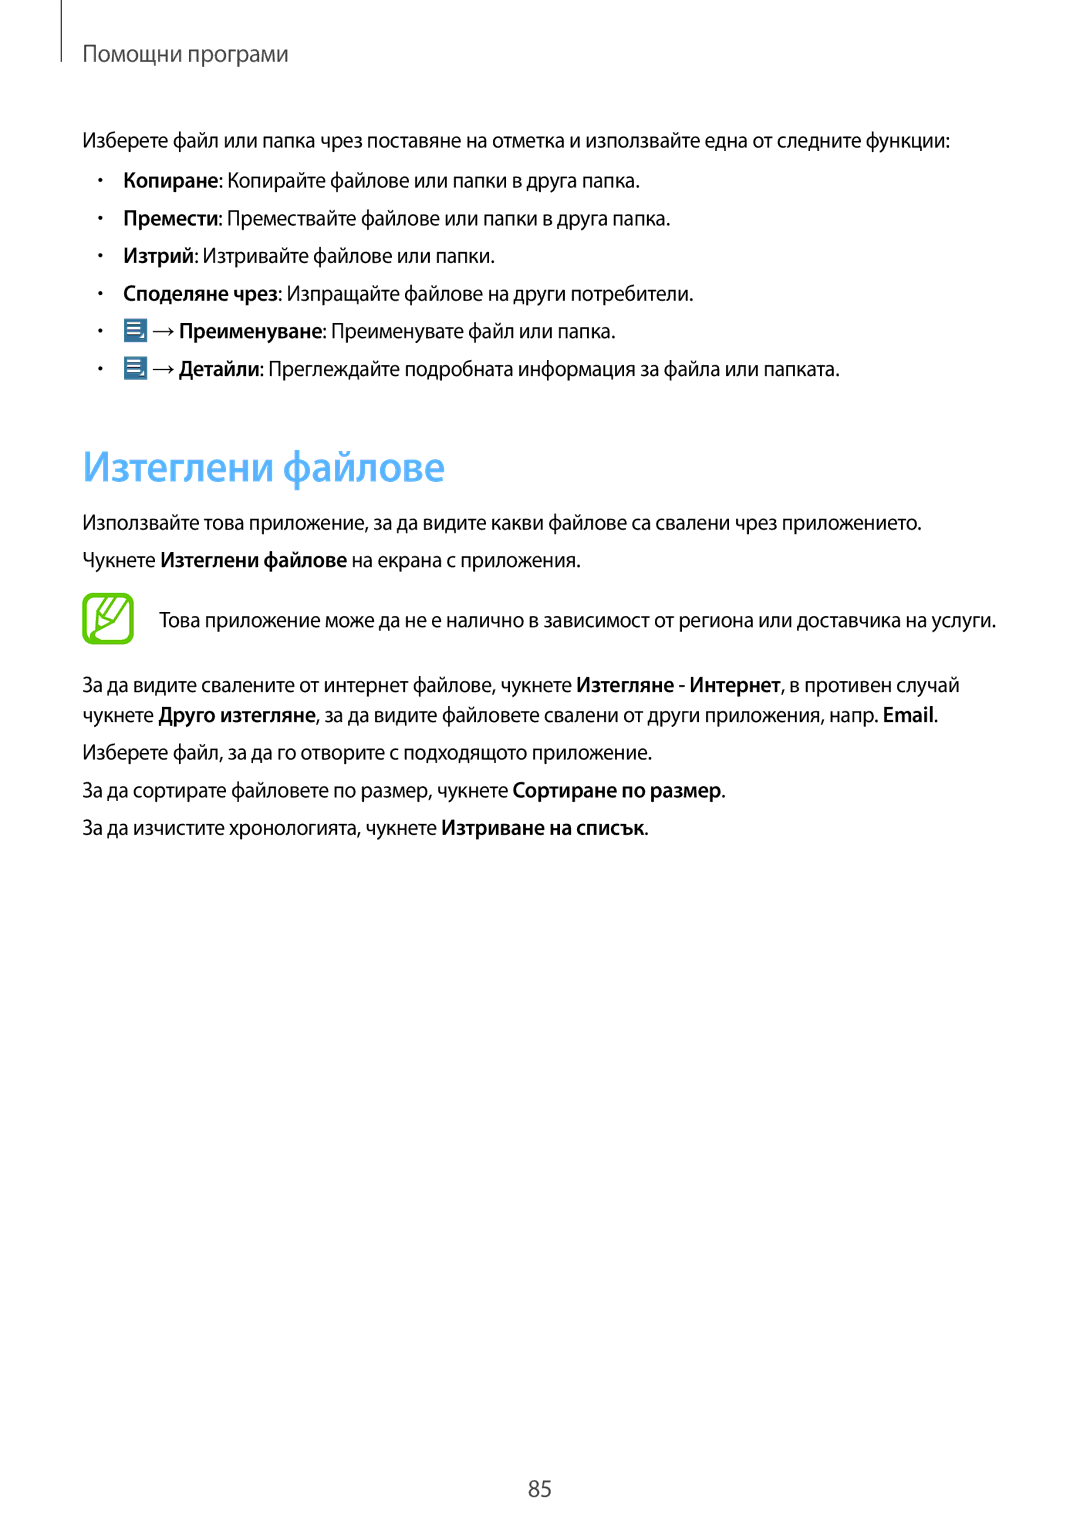 Samsung GT-P5200MKABGL, GT-P5200ZWABGL manual Изтеглени файлове, Изберете файл, за да го отворите с подходящото приложение 